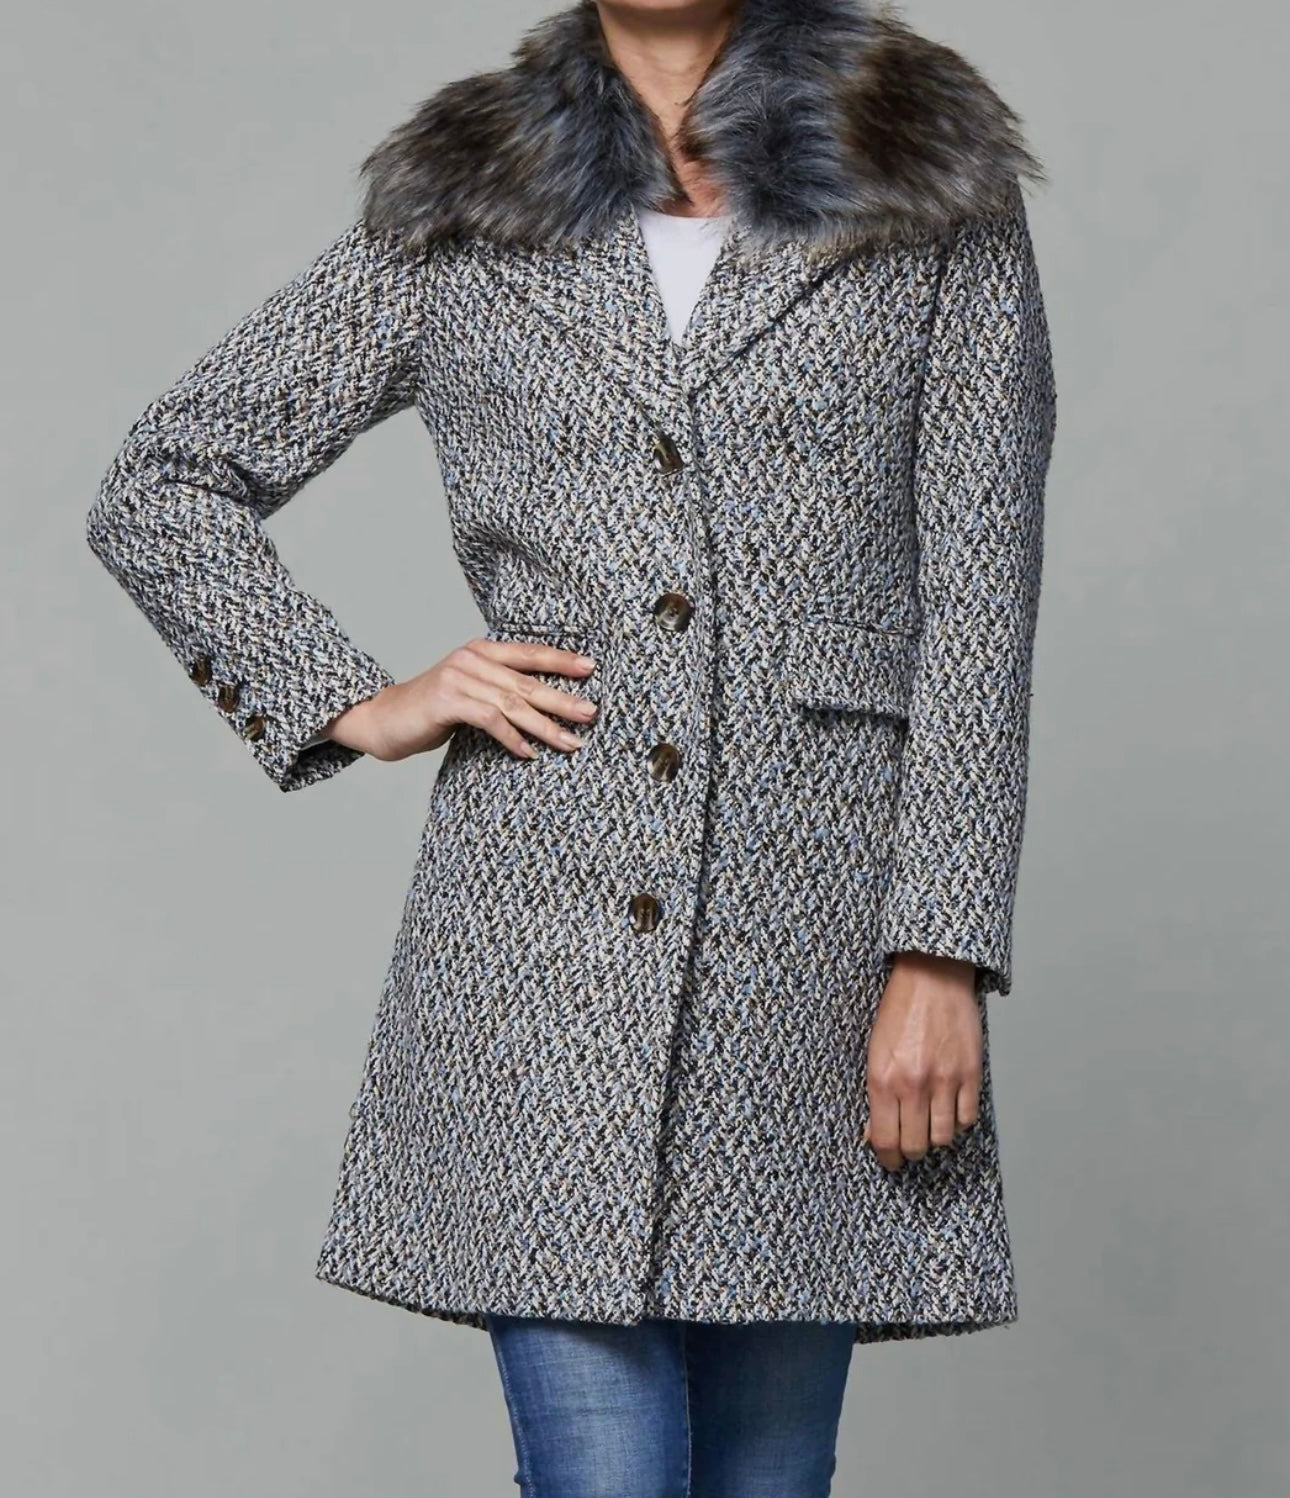 The Faux Fur Collar Tweed Jacket